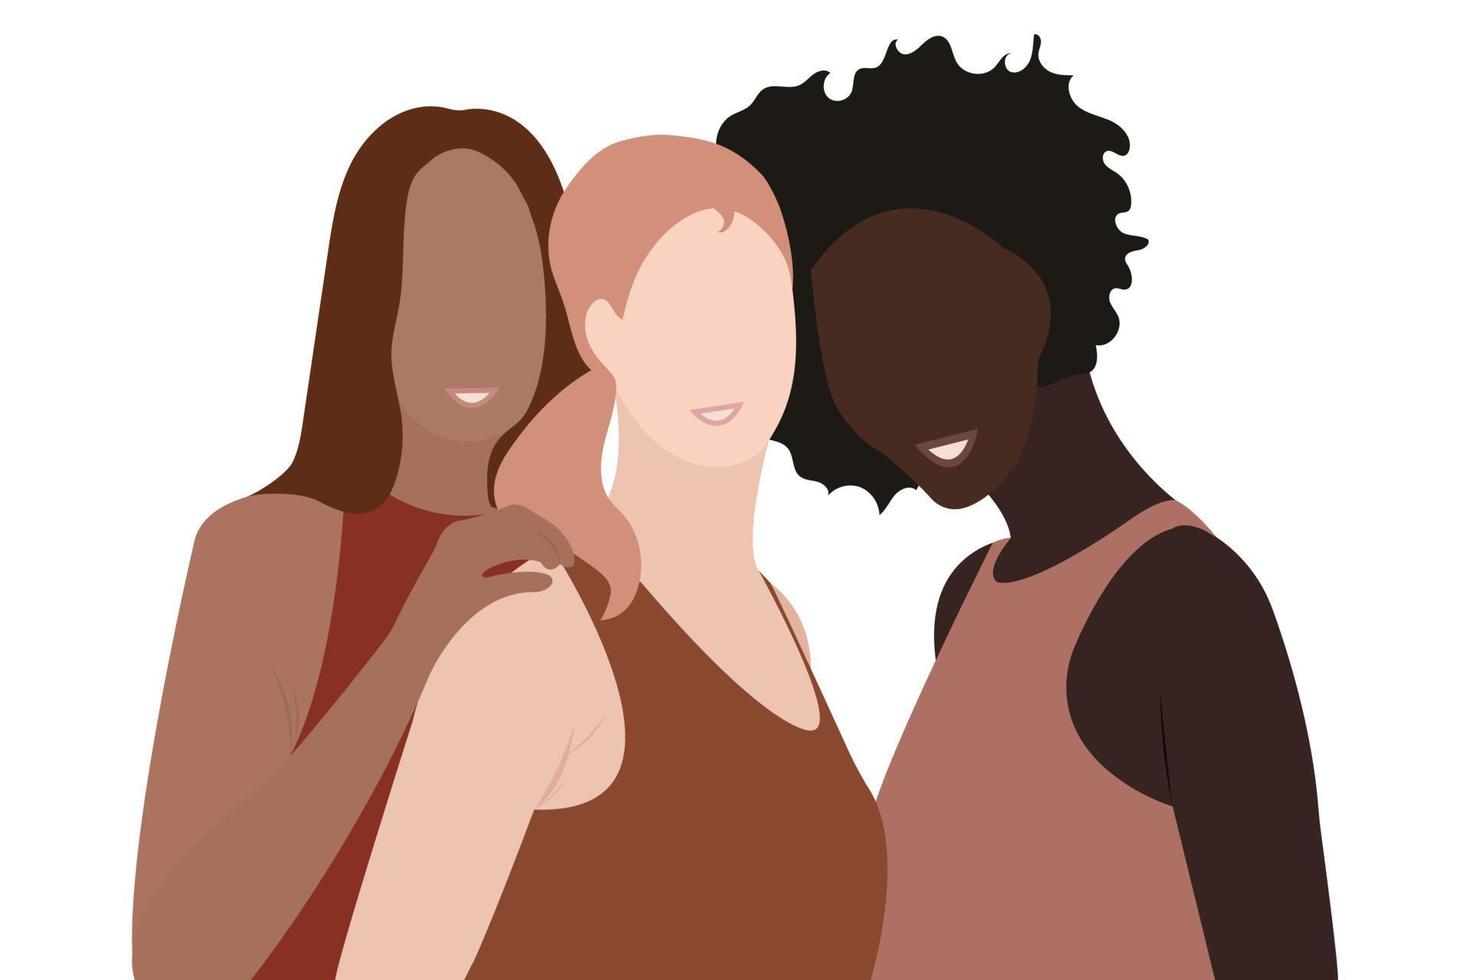 femmes de différent peau et cheveux couleurs. le concept de la féminité, indépendance et égalité vecteur